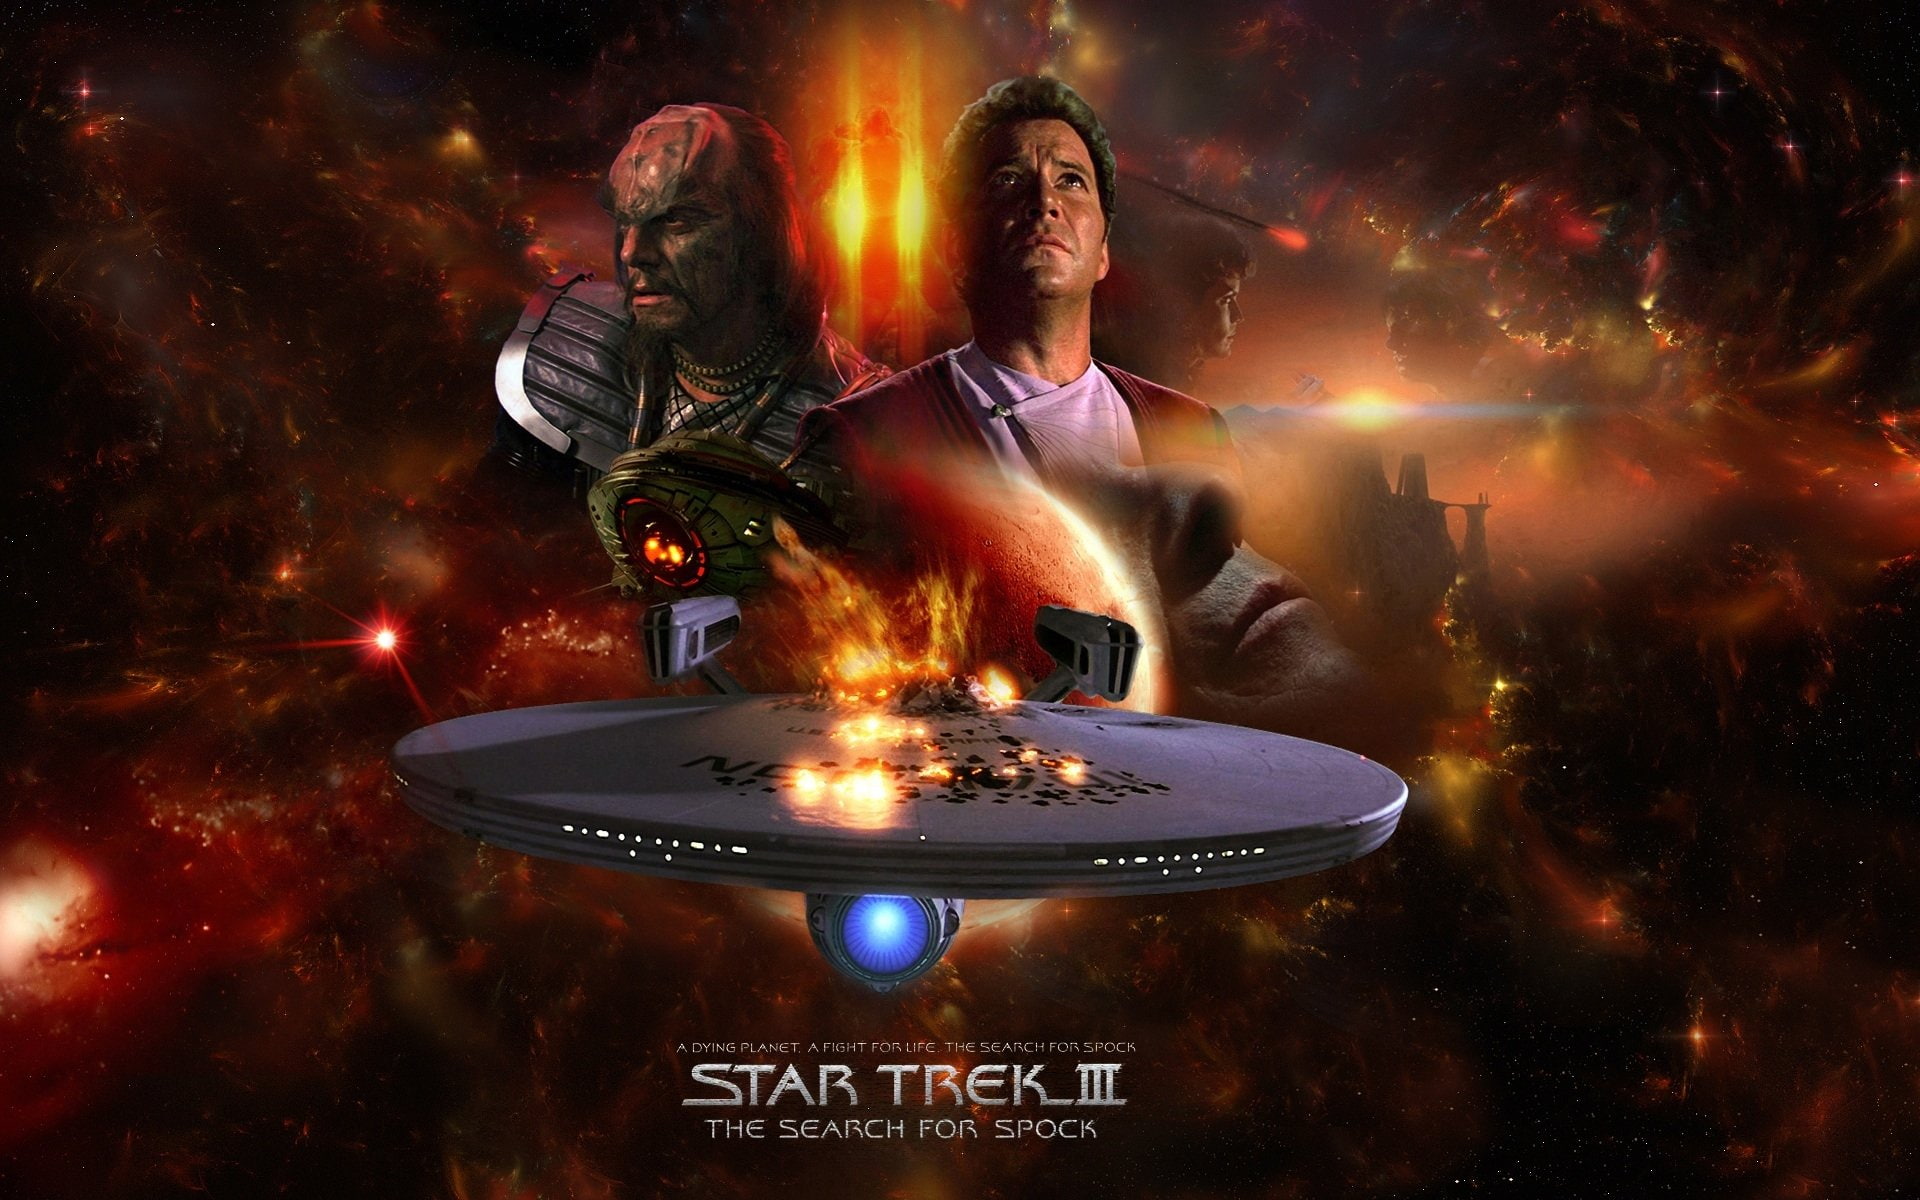 Star Trek, Star Trek III: The Search for Spock, burning, fire